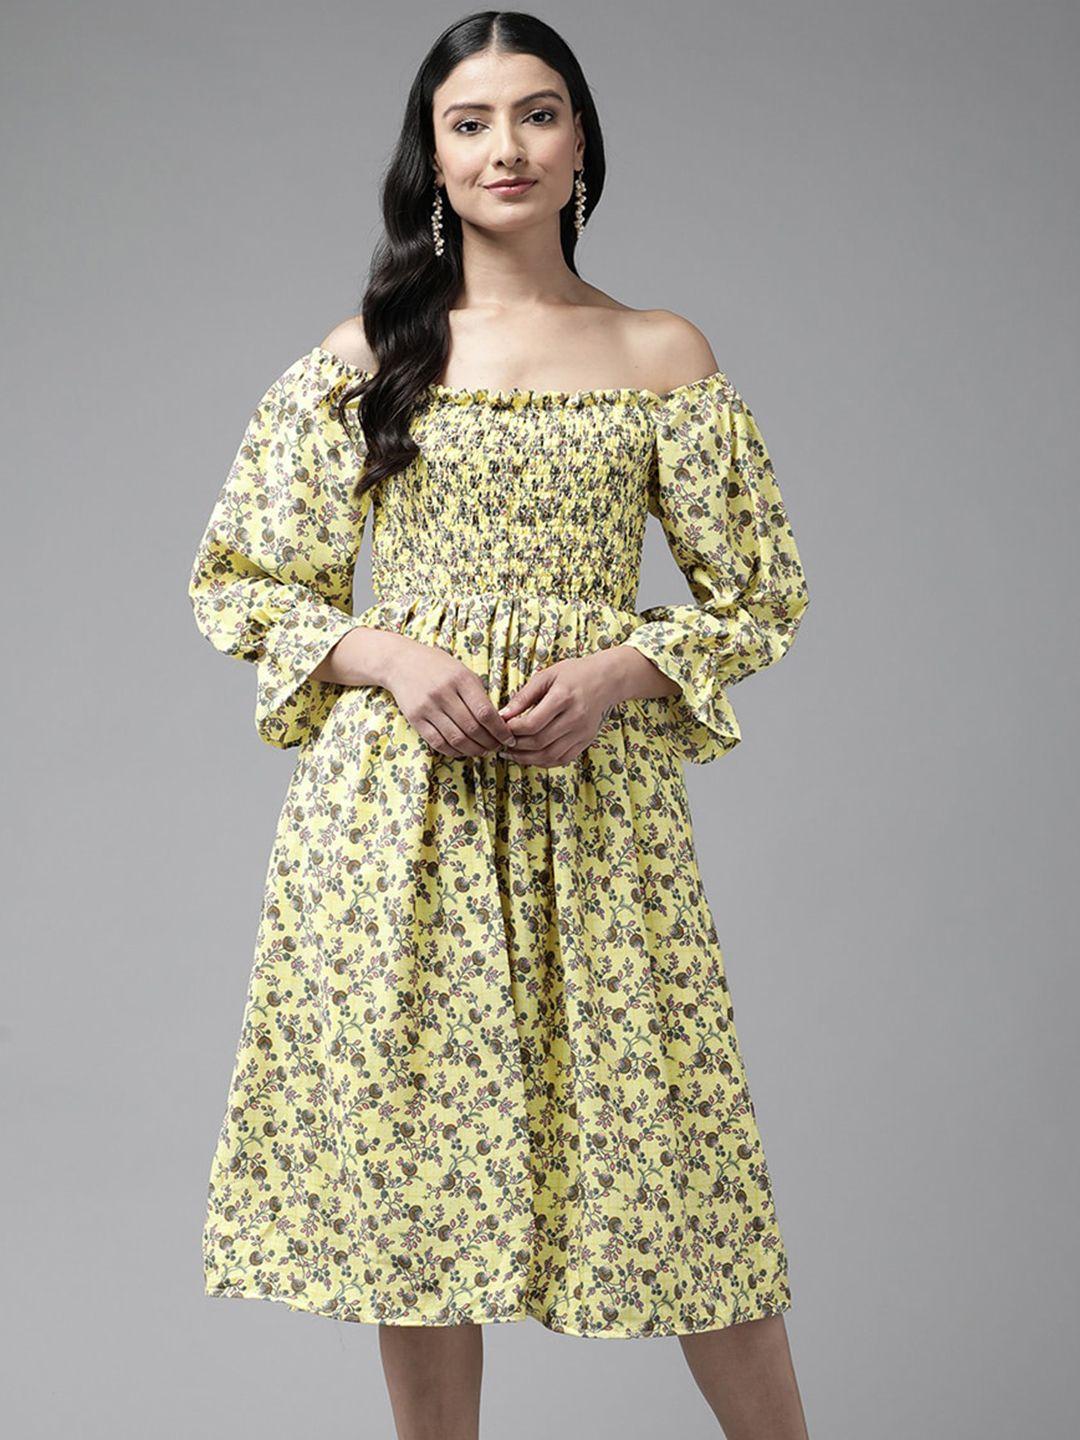 aarika-floral-printed-georgette-smocked-bell-sleeves-a-line-dress